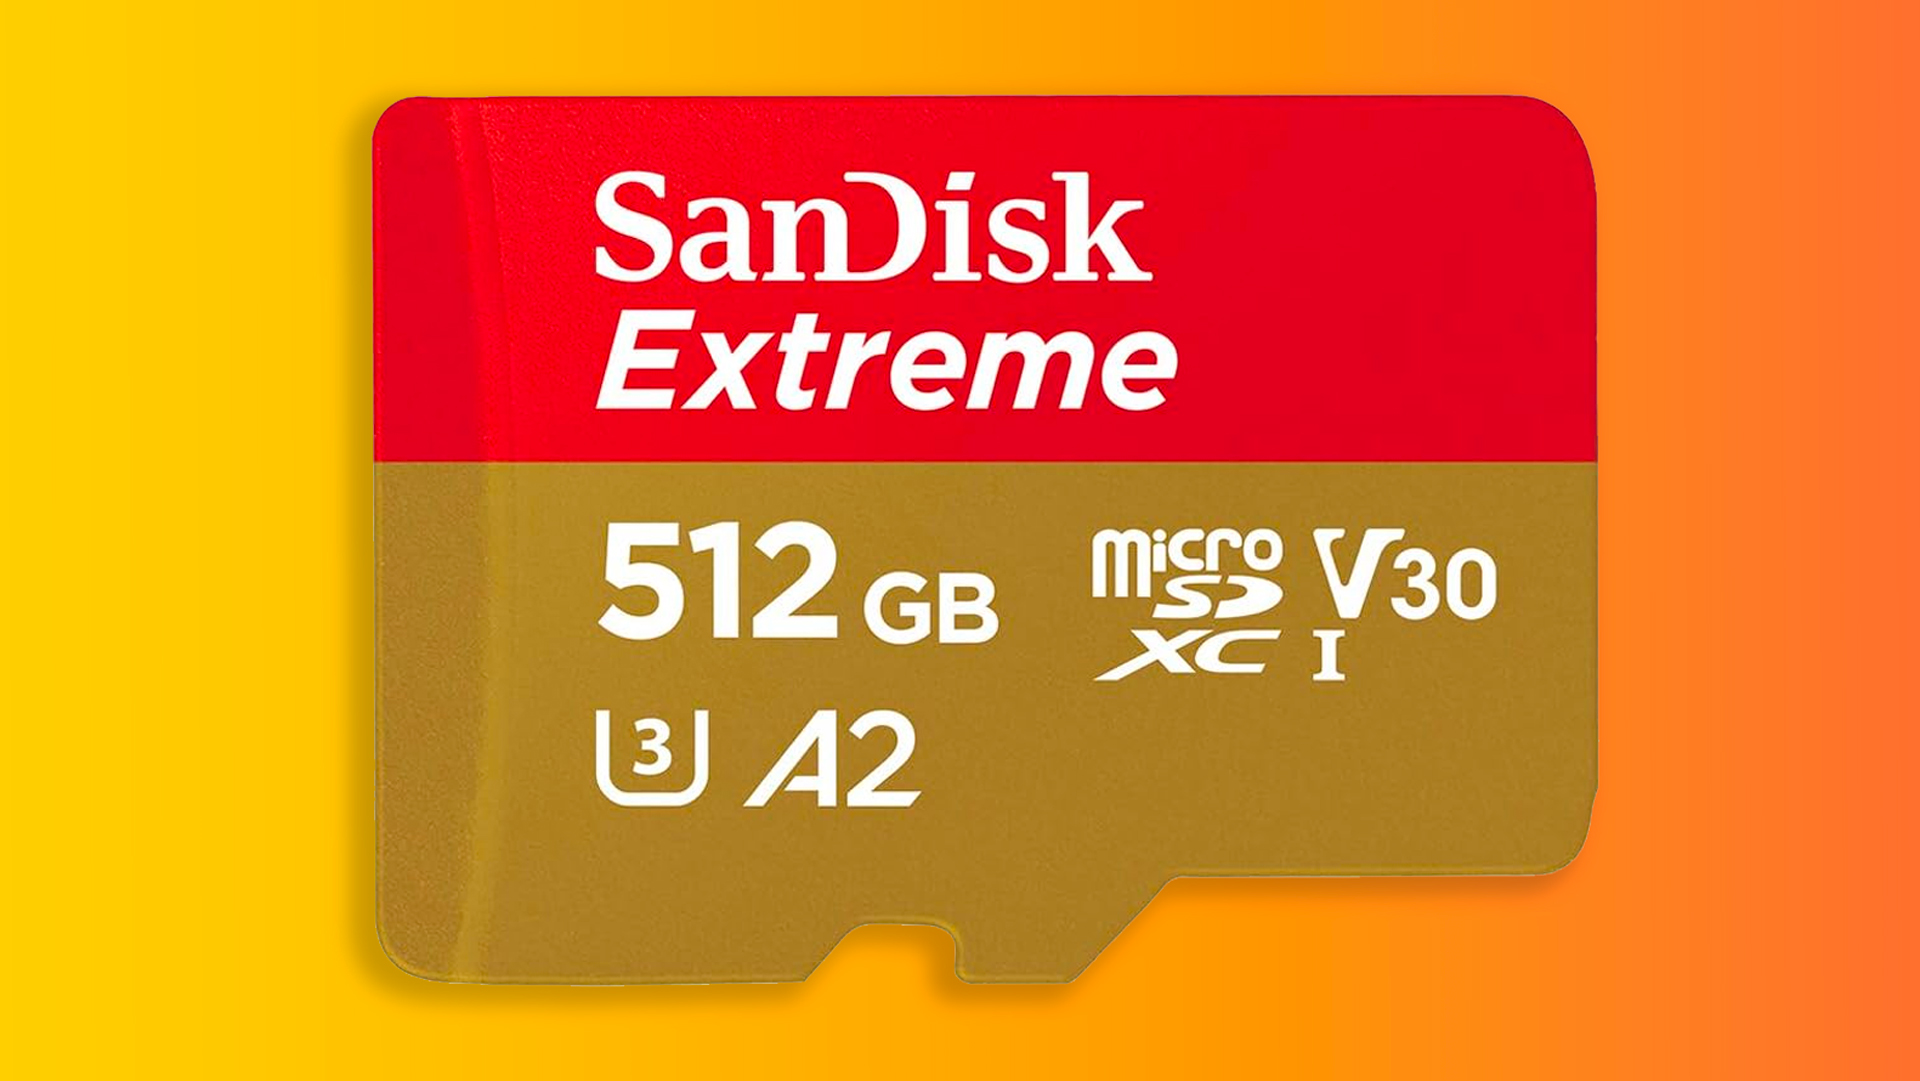 La carte microSD Sandisk A2 Classe 10 idéale pour votre Steam Deck